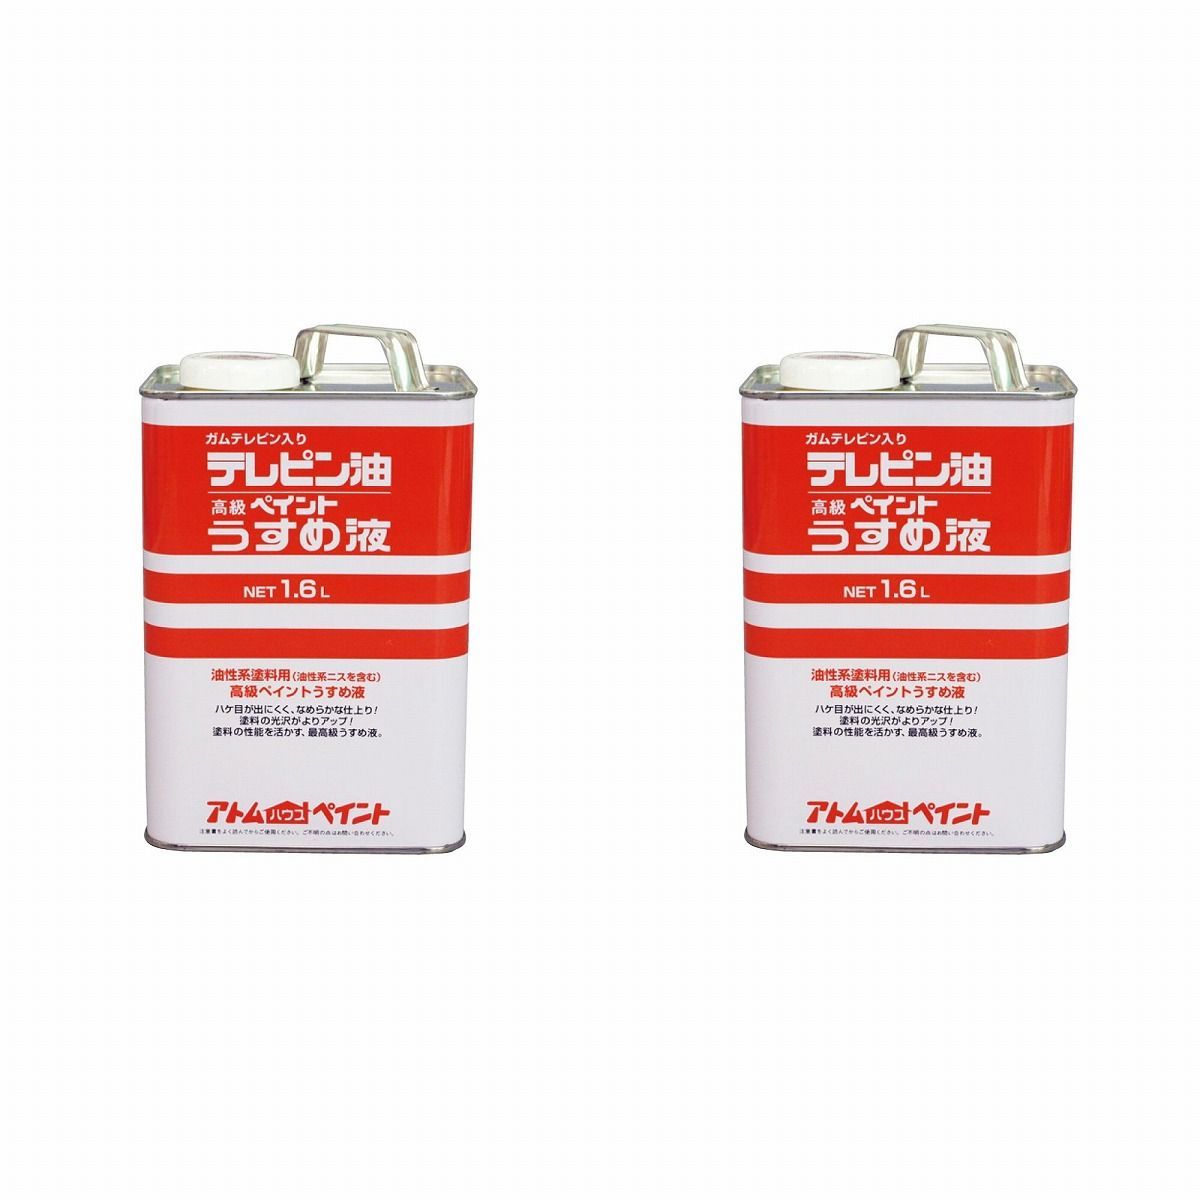 アトムハウスペイント テレピン油 1.6L 2缶セット【BT-58】 バックティースショップ メルカリ